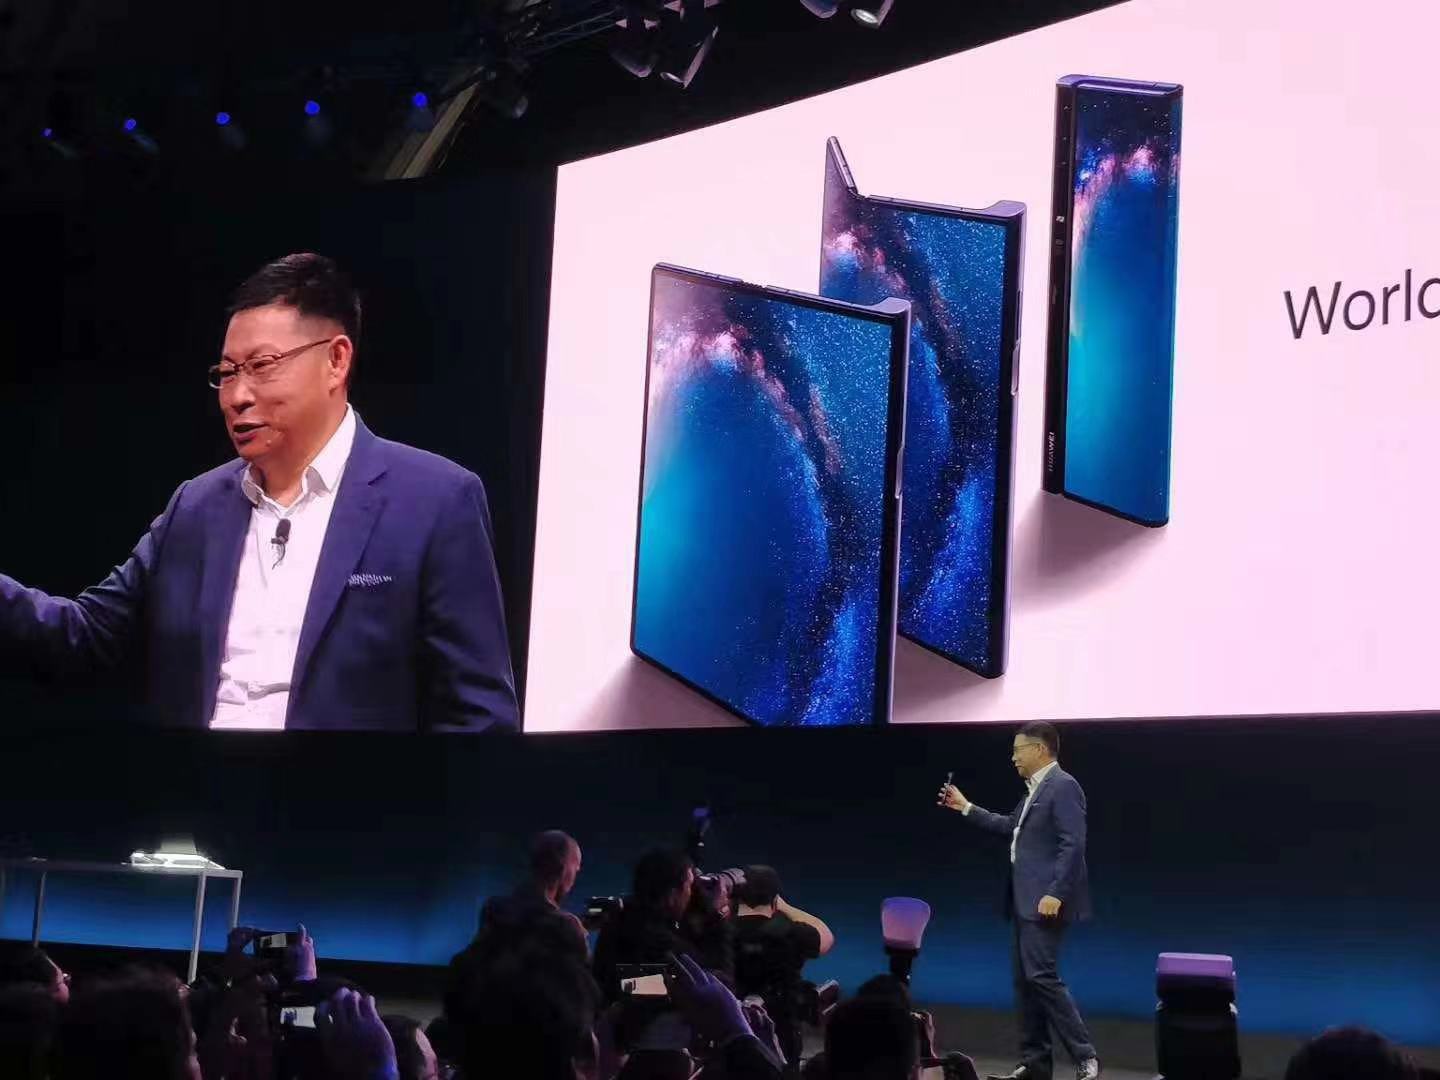 华为首款5G折叠屏手机Mate X发布 售价高达1